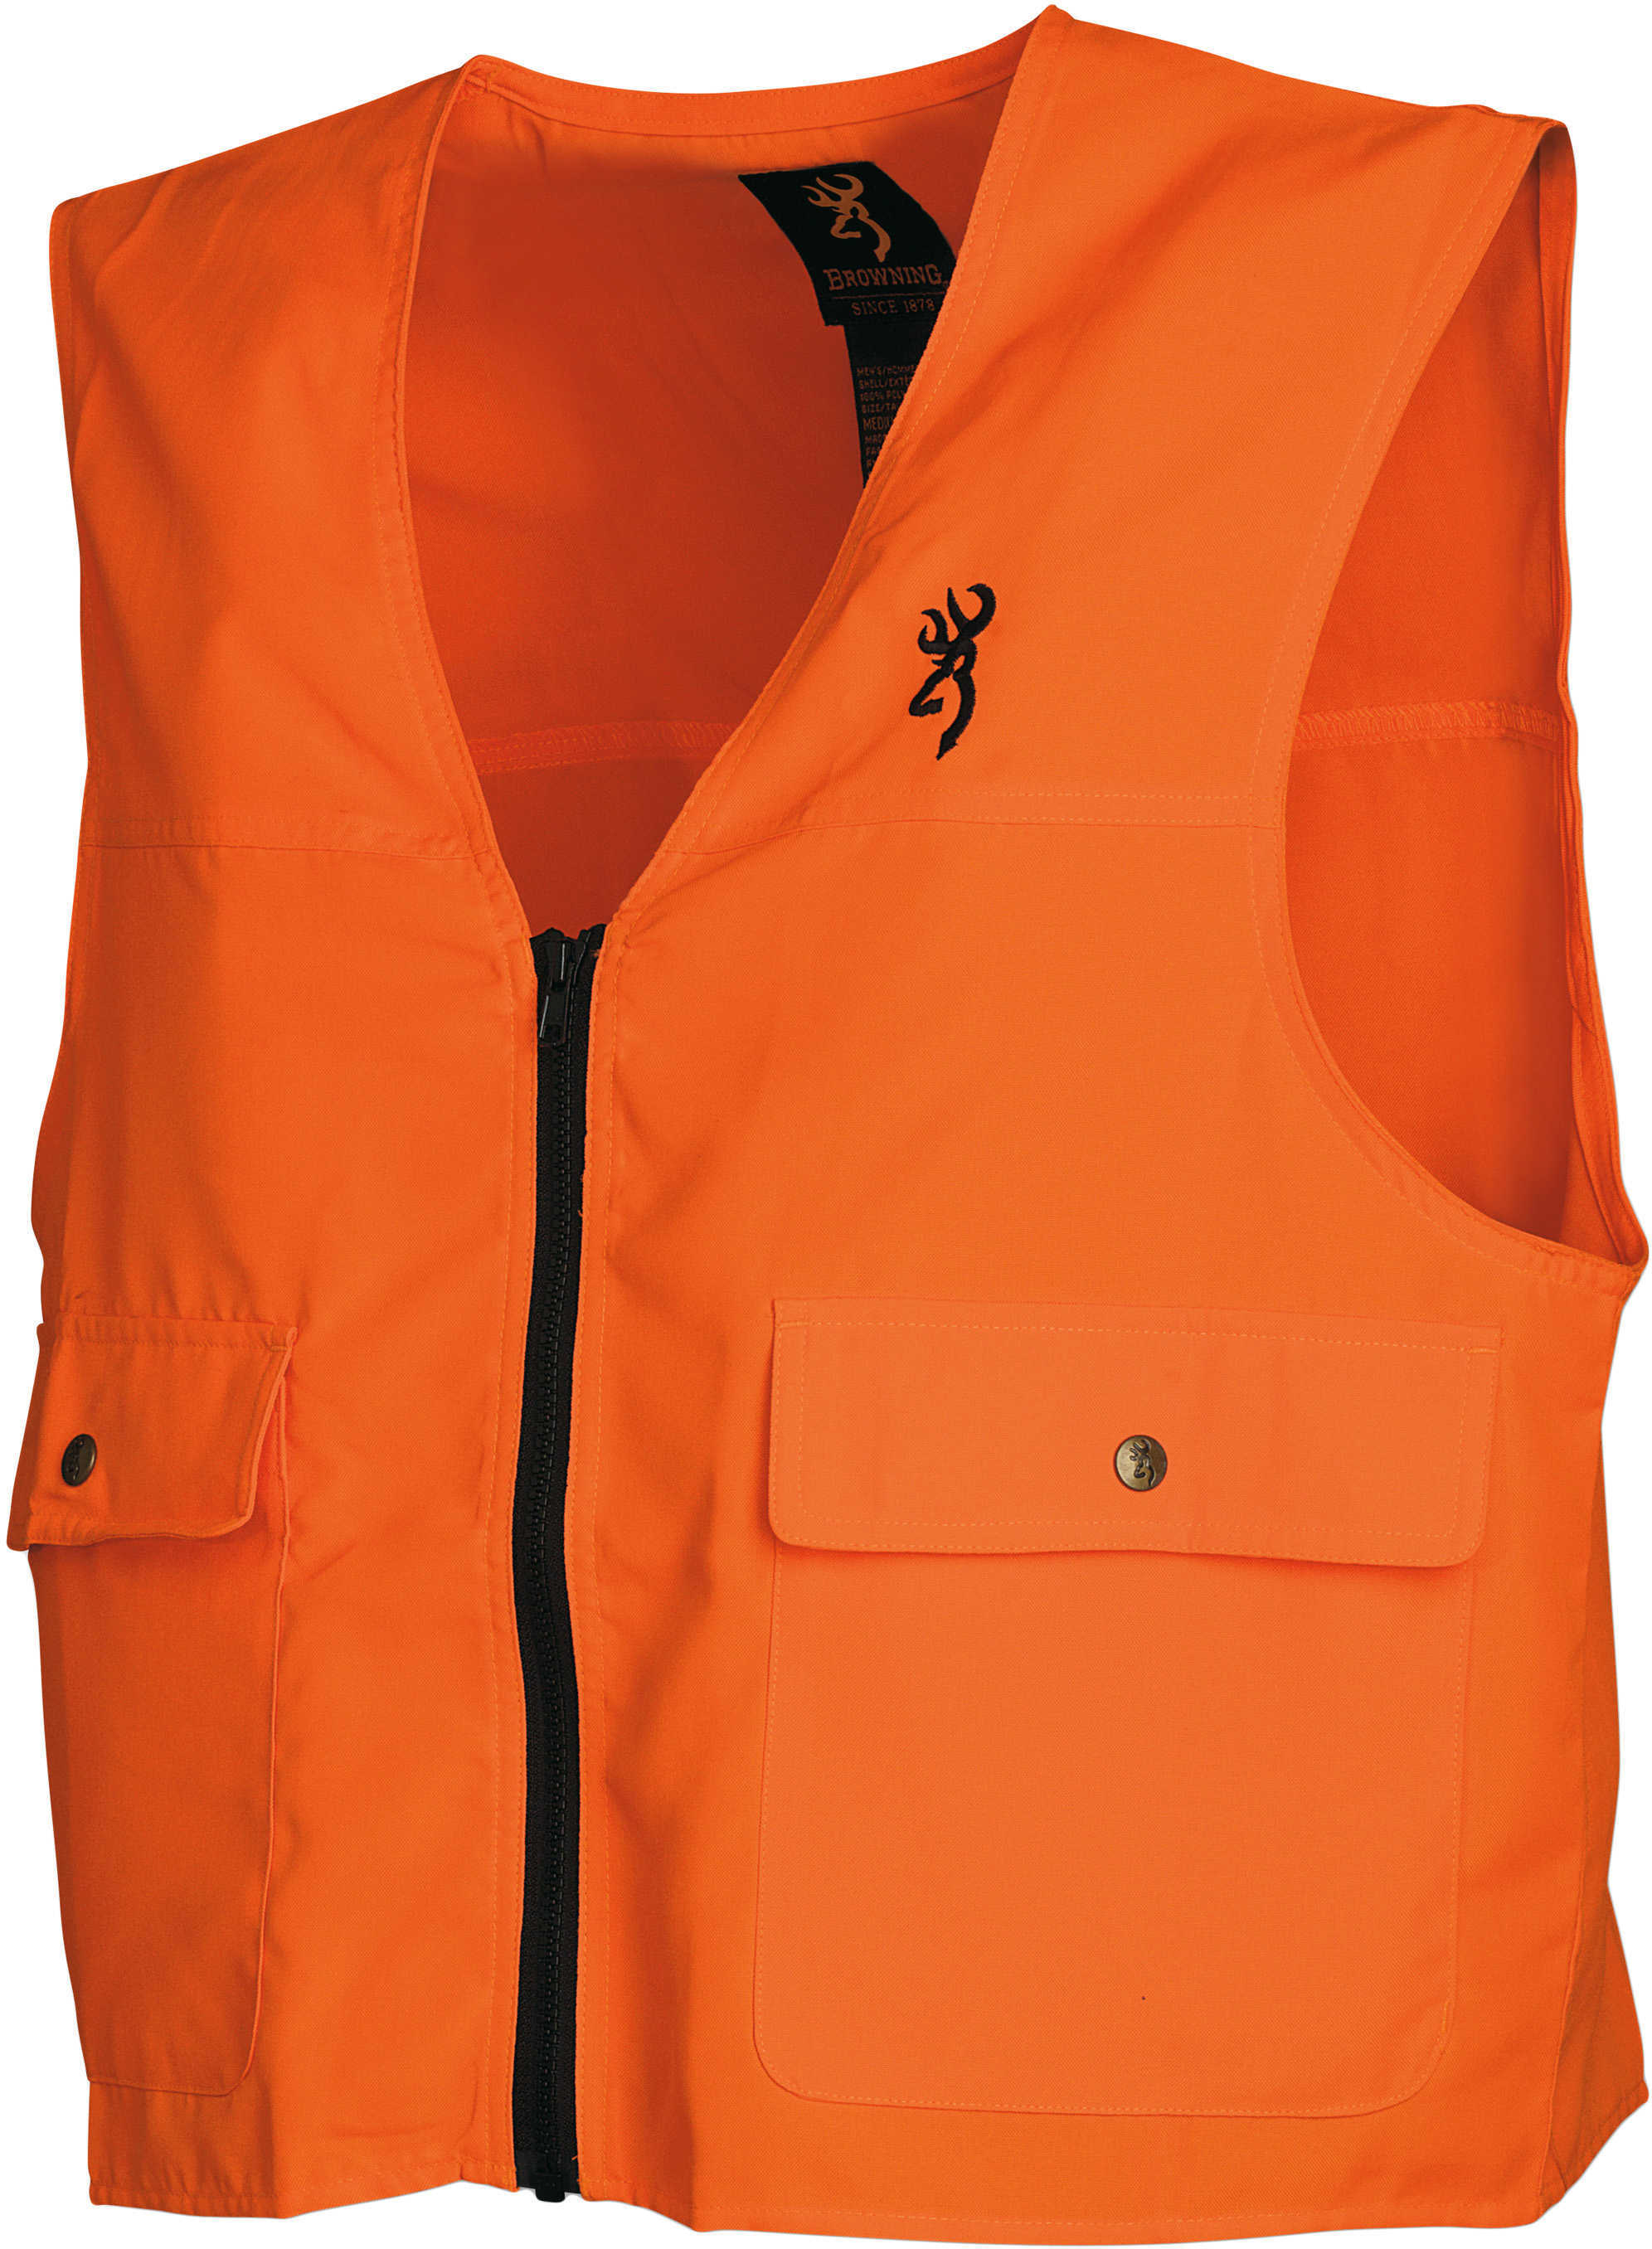 Browning Safety Vest Blaze Orange 3X-Large Model: 3051000106